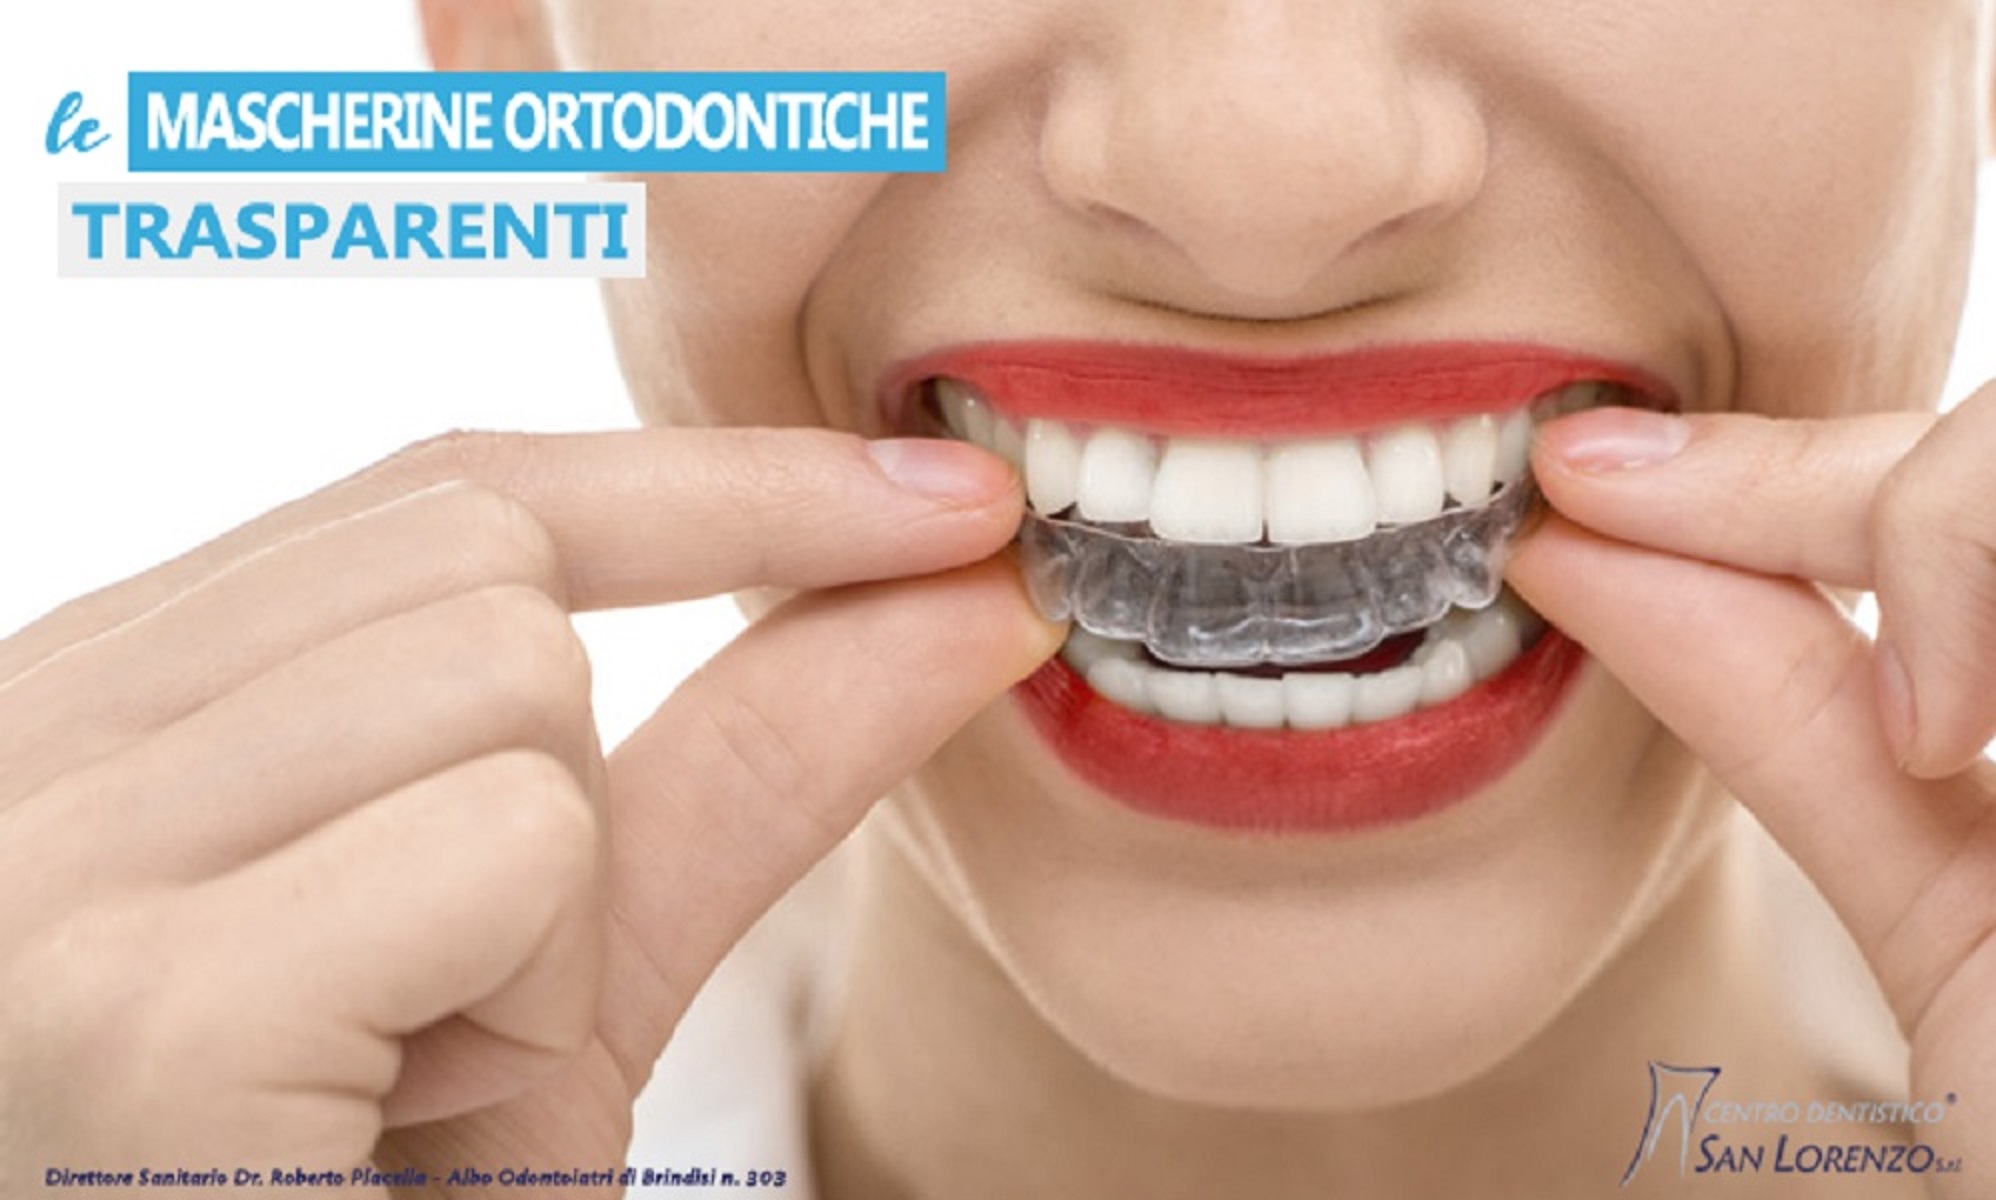 Ortodonzia Invisibile - le mascherine ortodontiche trasparenti per allineare i denti 